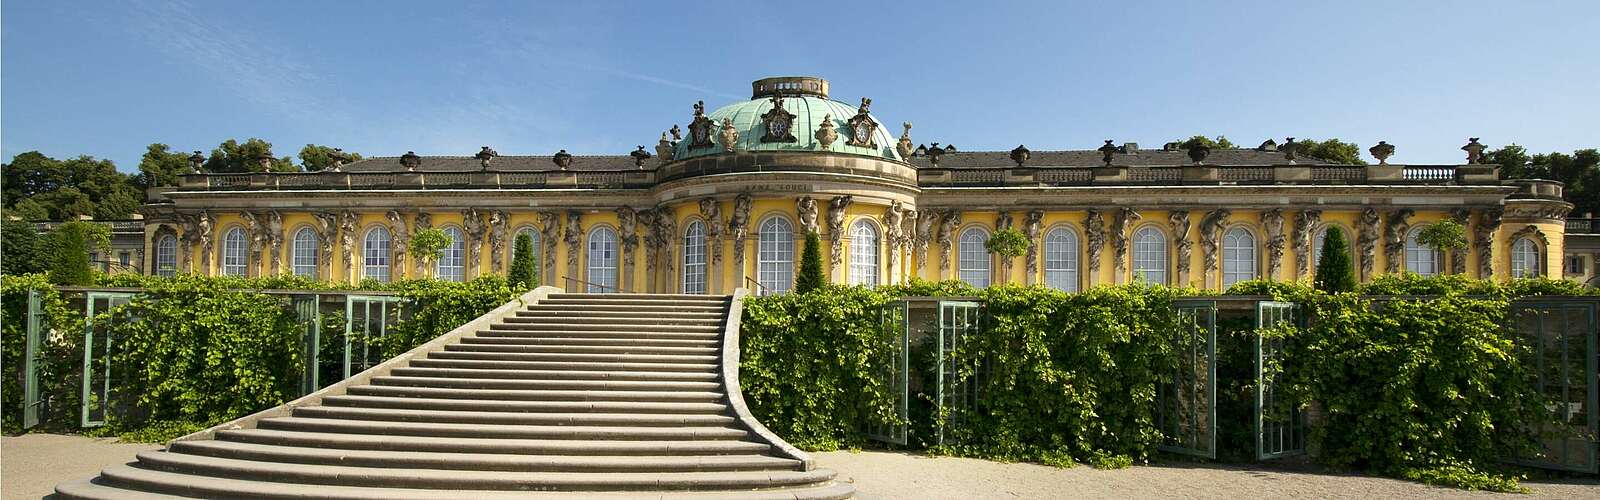 Schloss Sanssouci,
        
    

        Foto: TMB-Fotoarchiv/SPSG/Leo Seidel